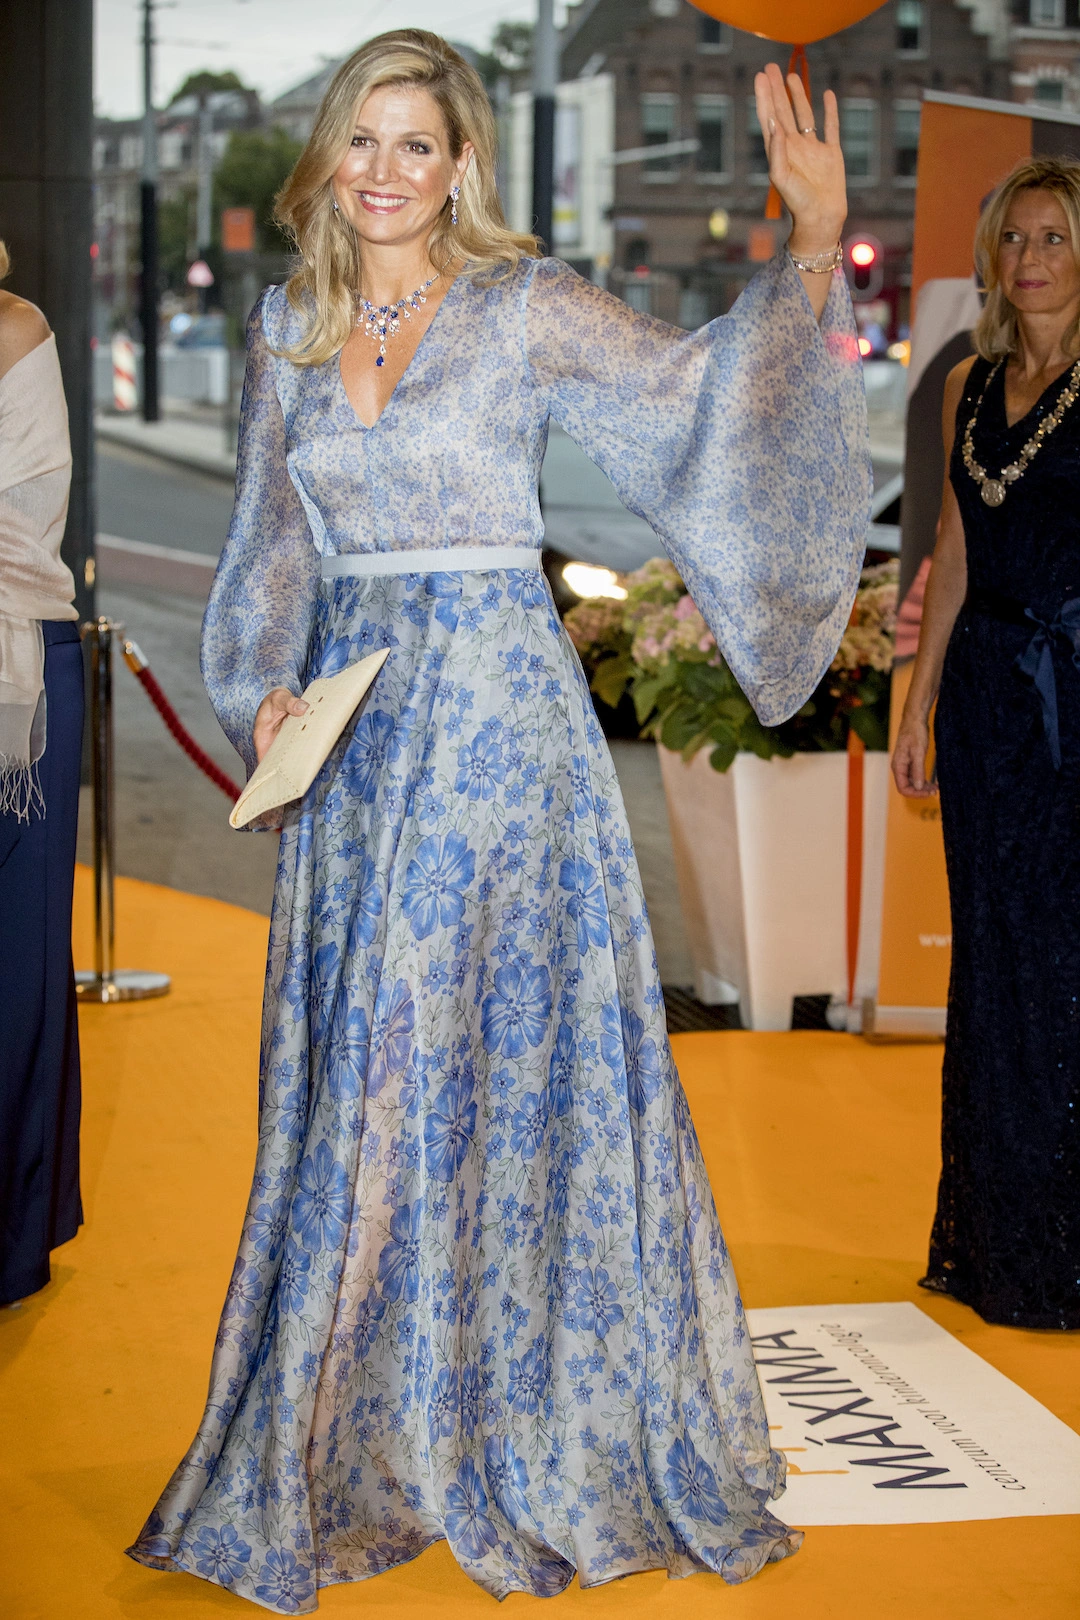 5. September 2017: Königin Maxima besucht eine Charity-Gala in Amsterdam. Sie trägt ein hellblaues Kleid mit floralem Muster von Luisa Beccaria. © Patrick van Katwijk/Getty Images